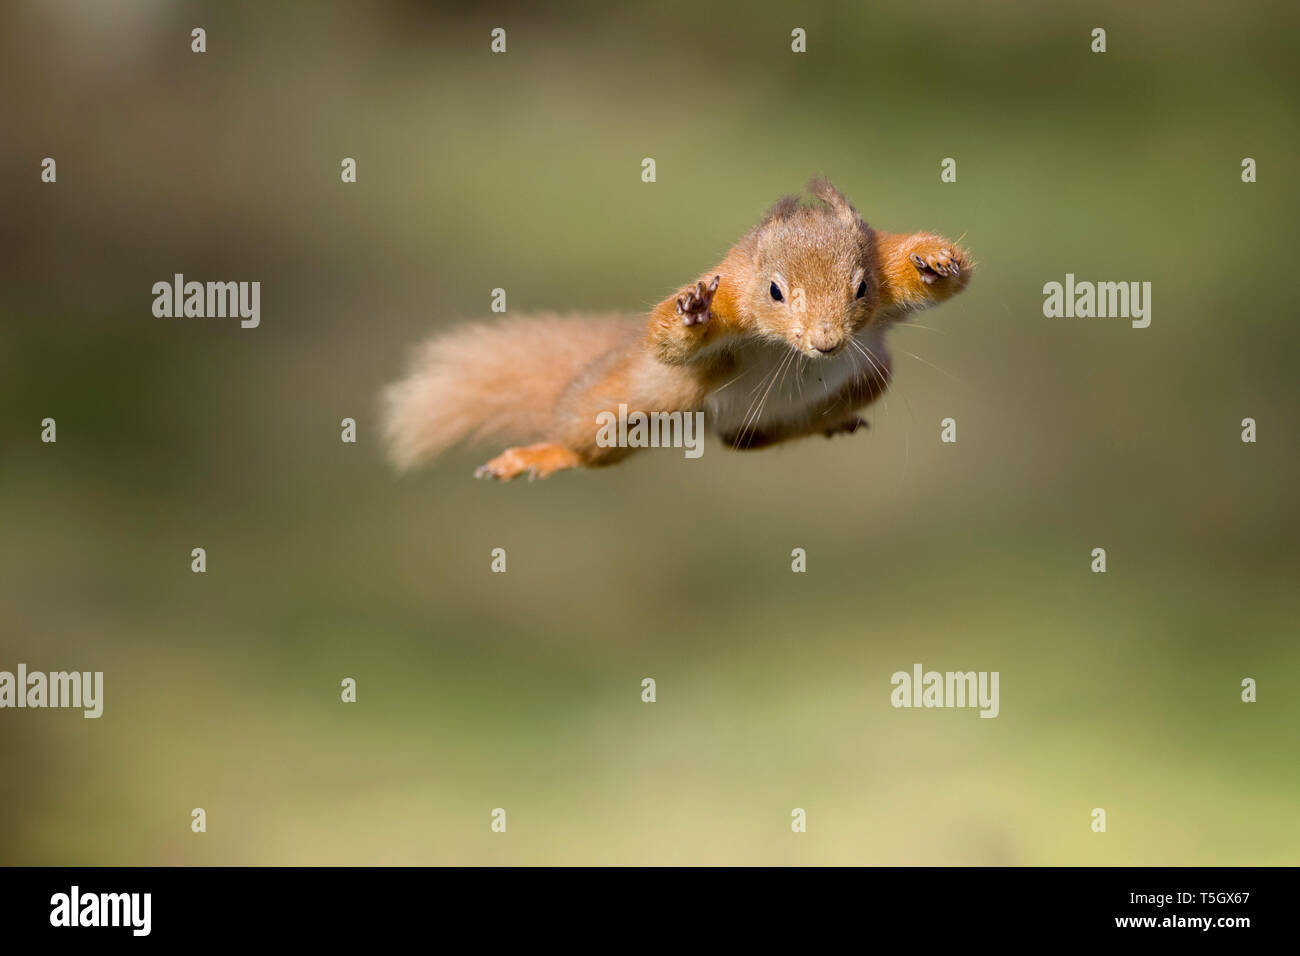 La ardilla roja, Sciurus vulgaris, saltar Foto de stock